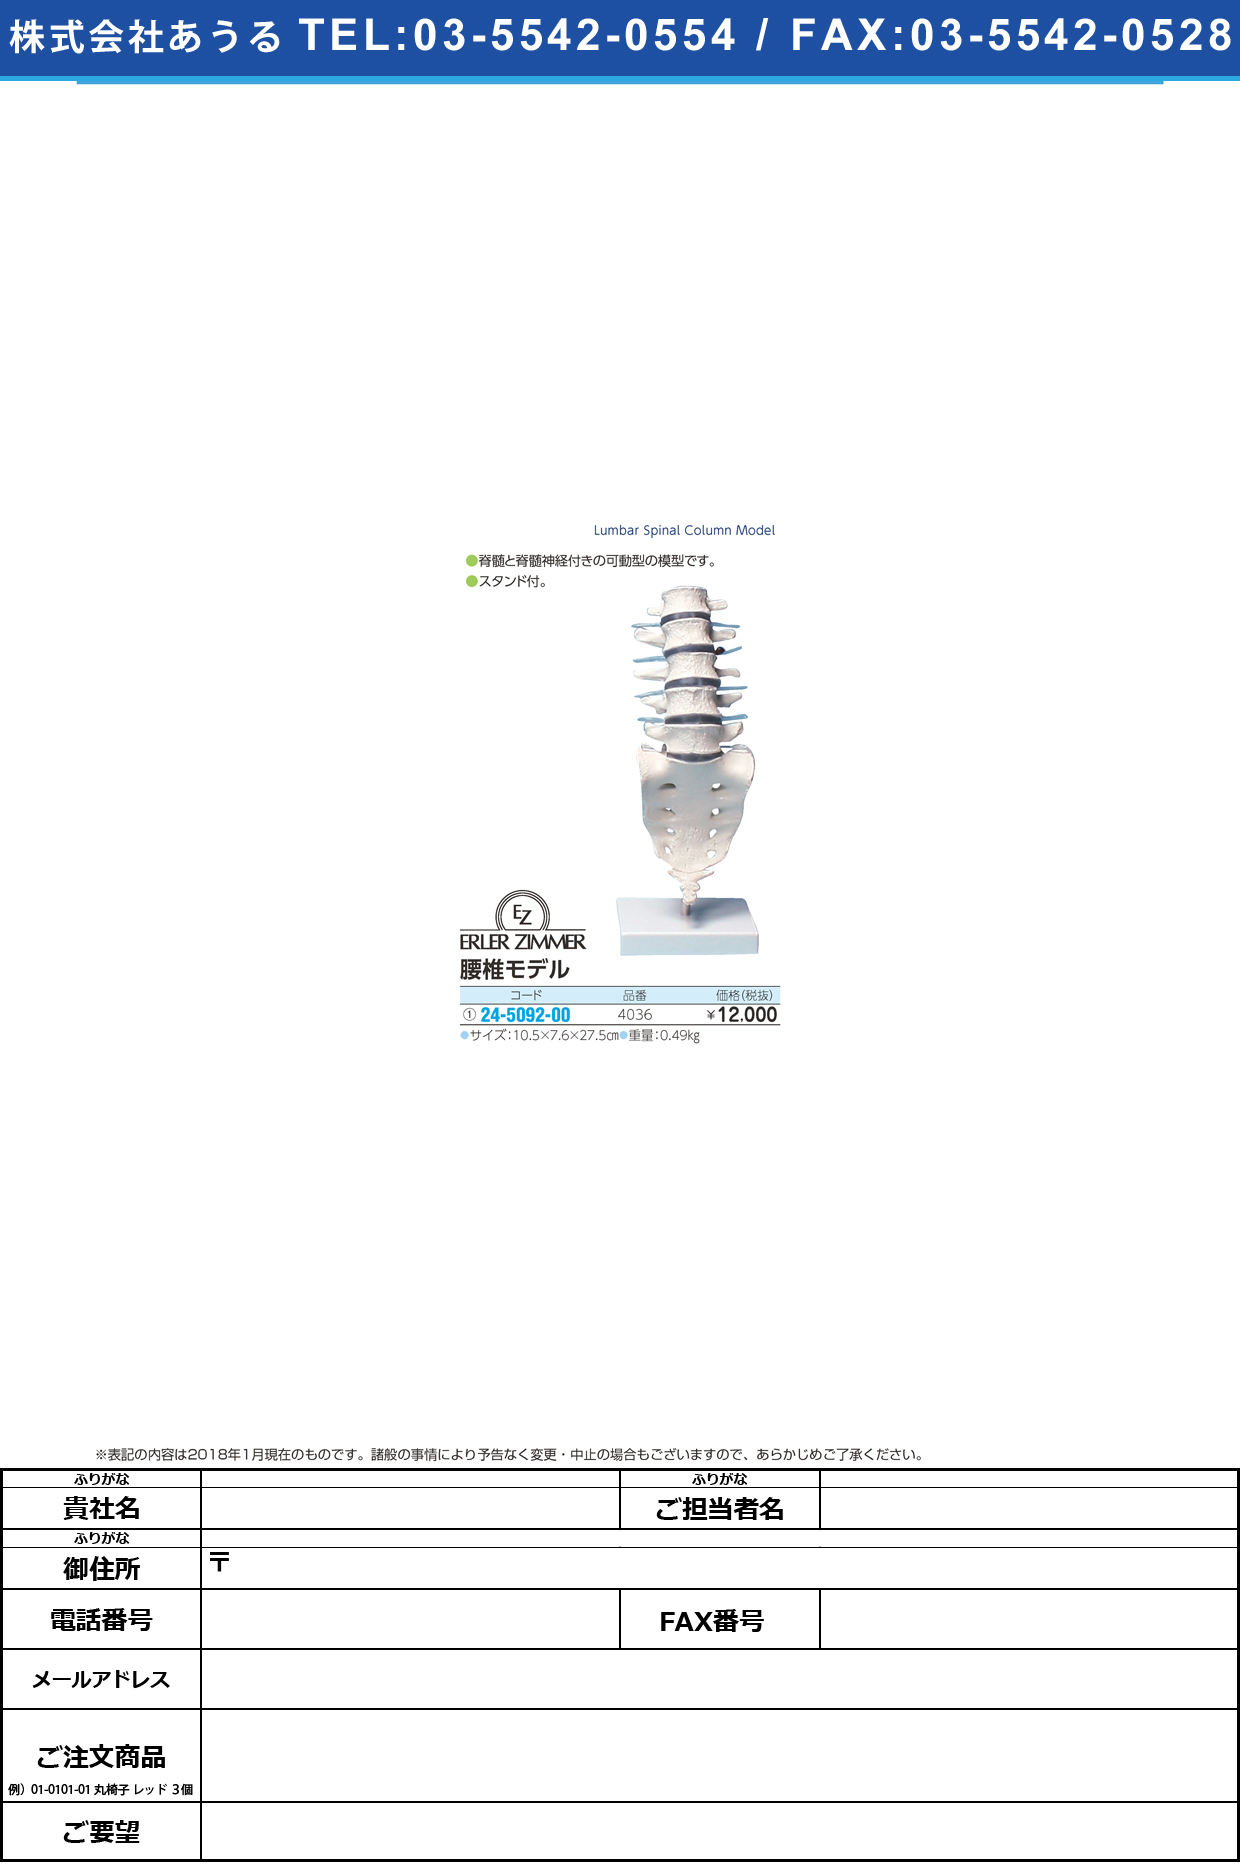 (24-5092-00)腰椎モデル 4036 ﾖｳﾂｲﾓﾃﾞﾙ(エルラージーマー社)【1個単位】【2018年カタログ商品】